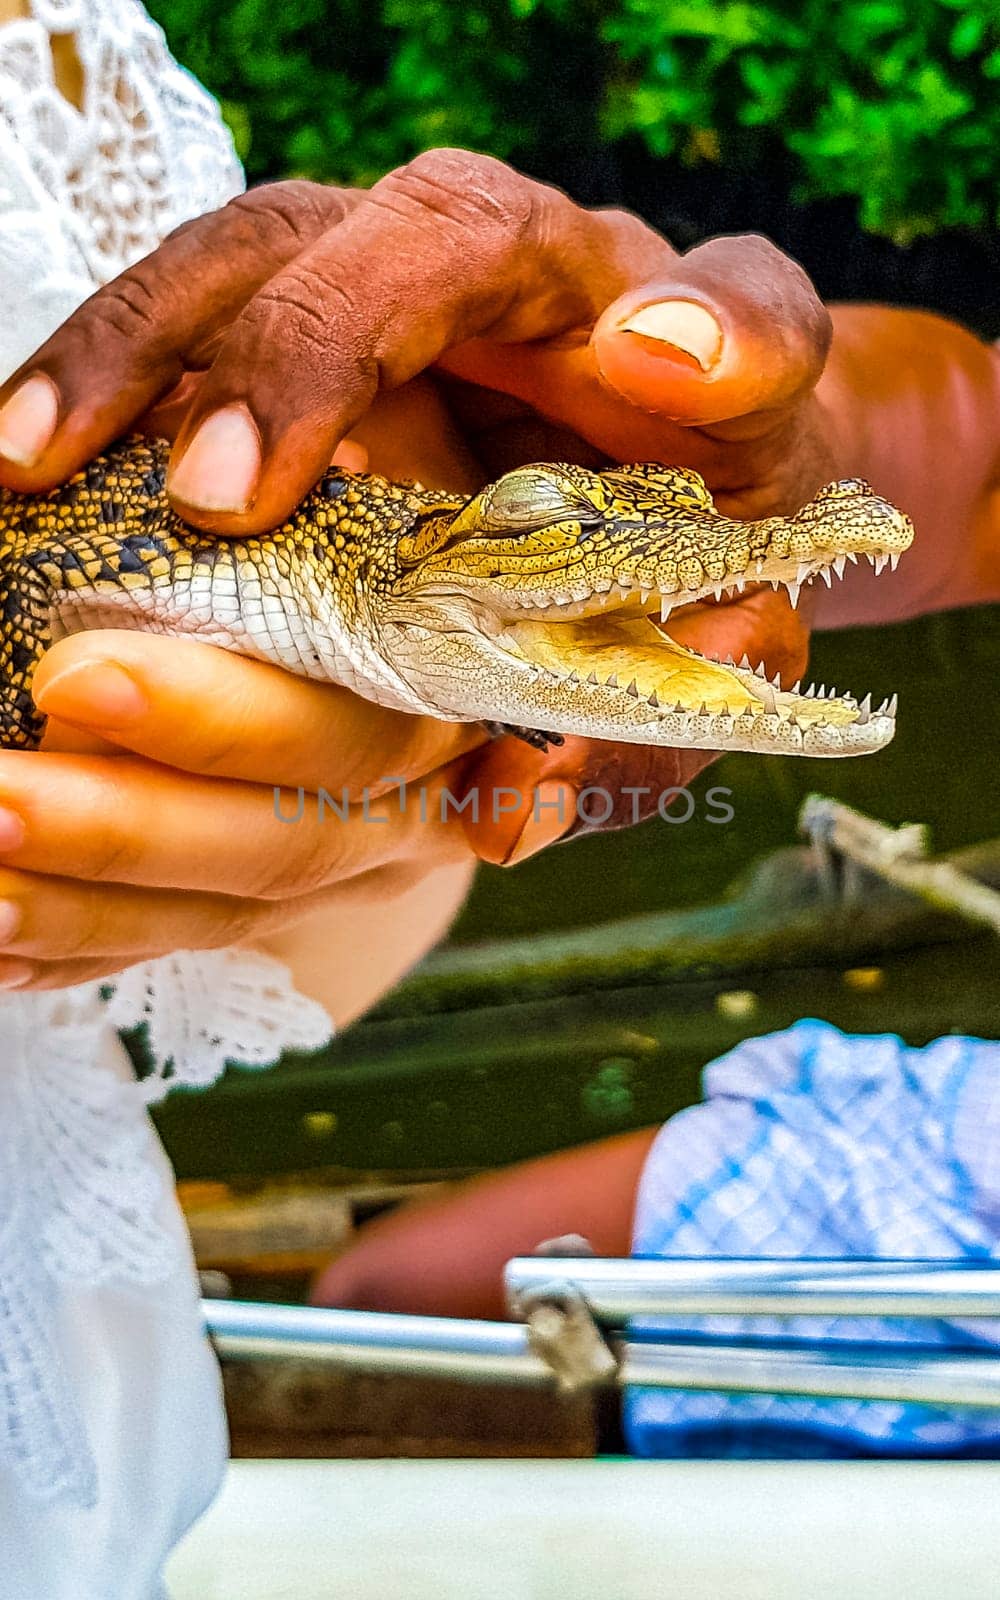 Baby crocodile from the mangroves in hand in Sri Lanka. by Arkadij